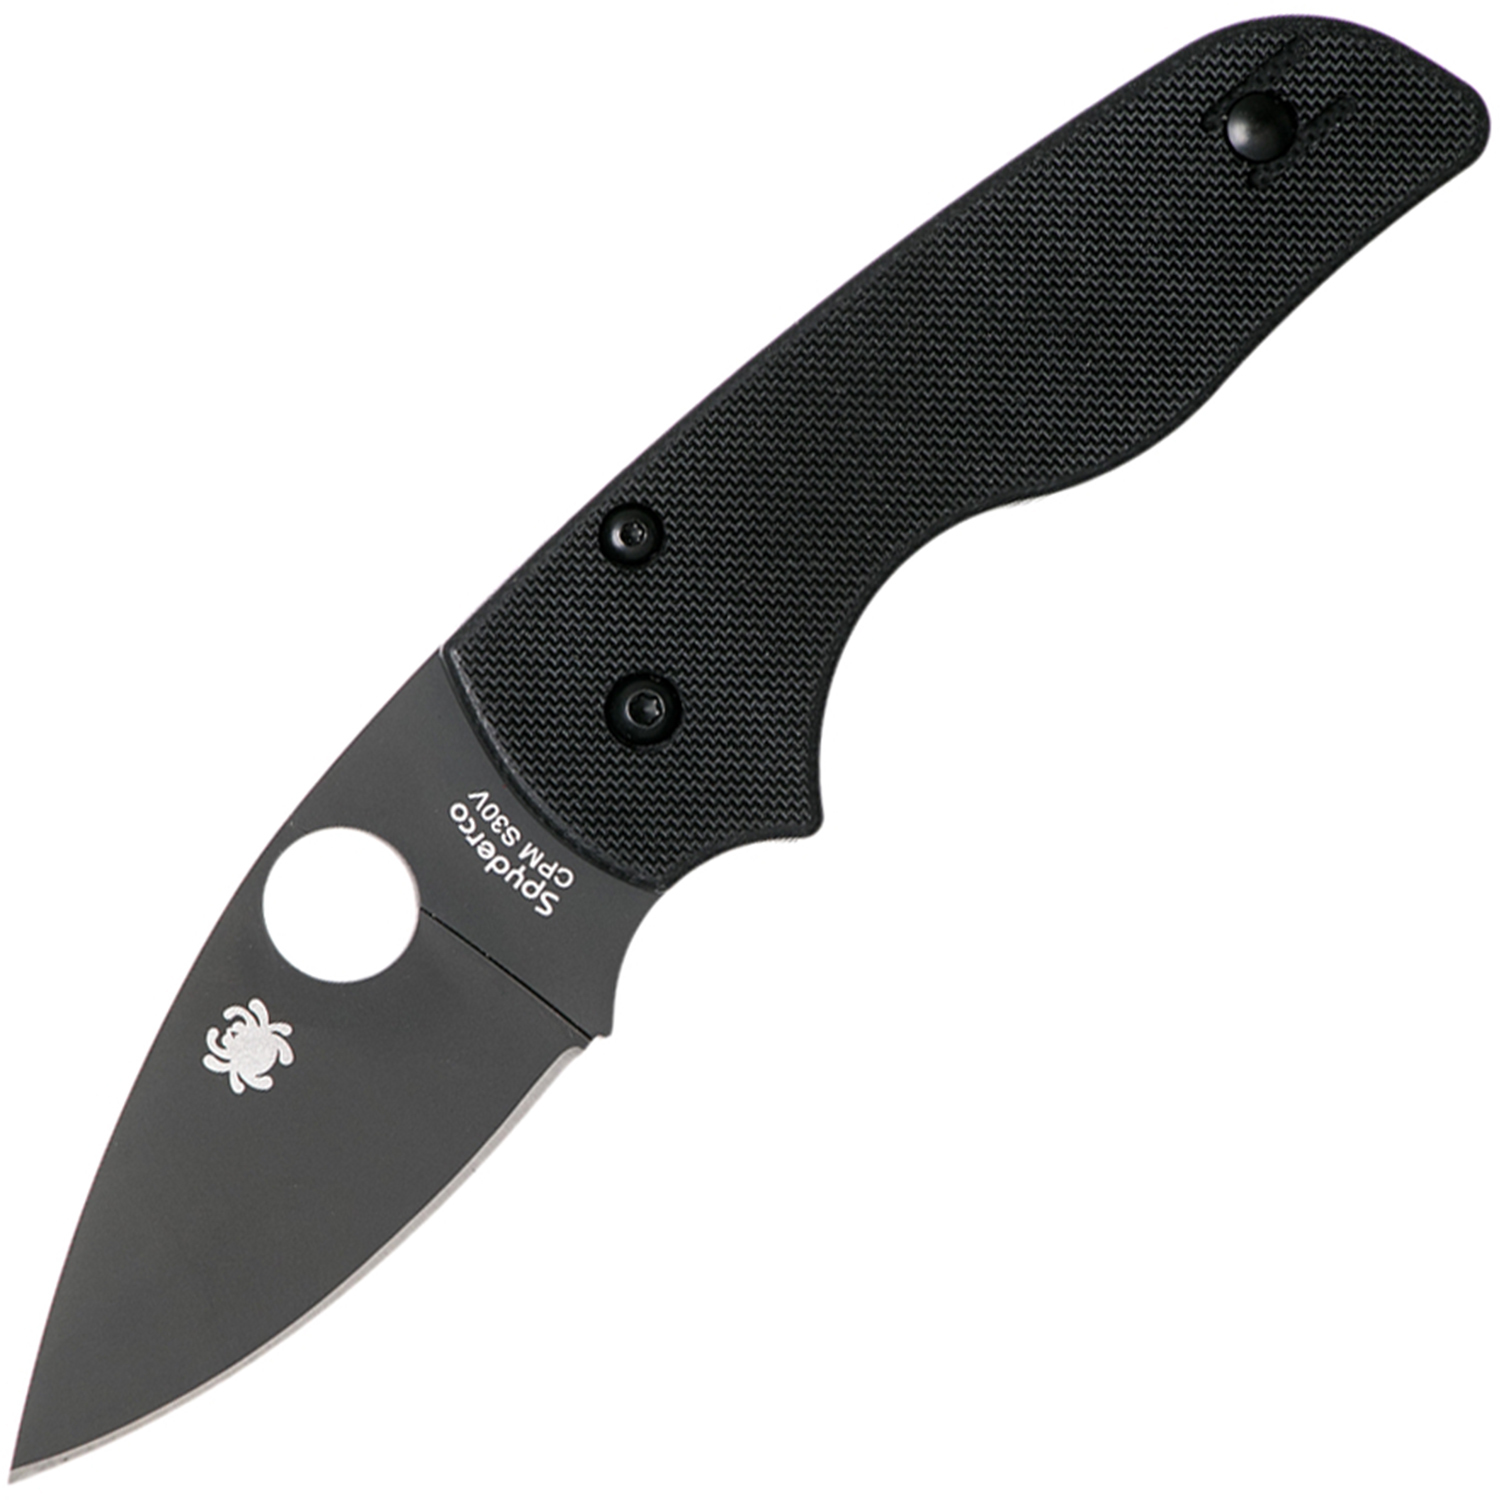 Нож складной Lil' Native - Spyderco 230GPBBK, сталь Crucible CPM® S30V™ DLC Coated Plain, рукоять стеклотекстолит G10, чёрный - фото 1